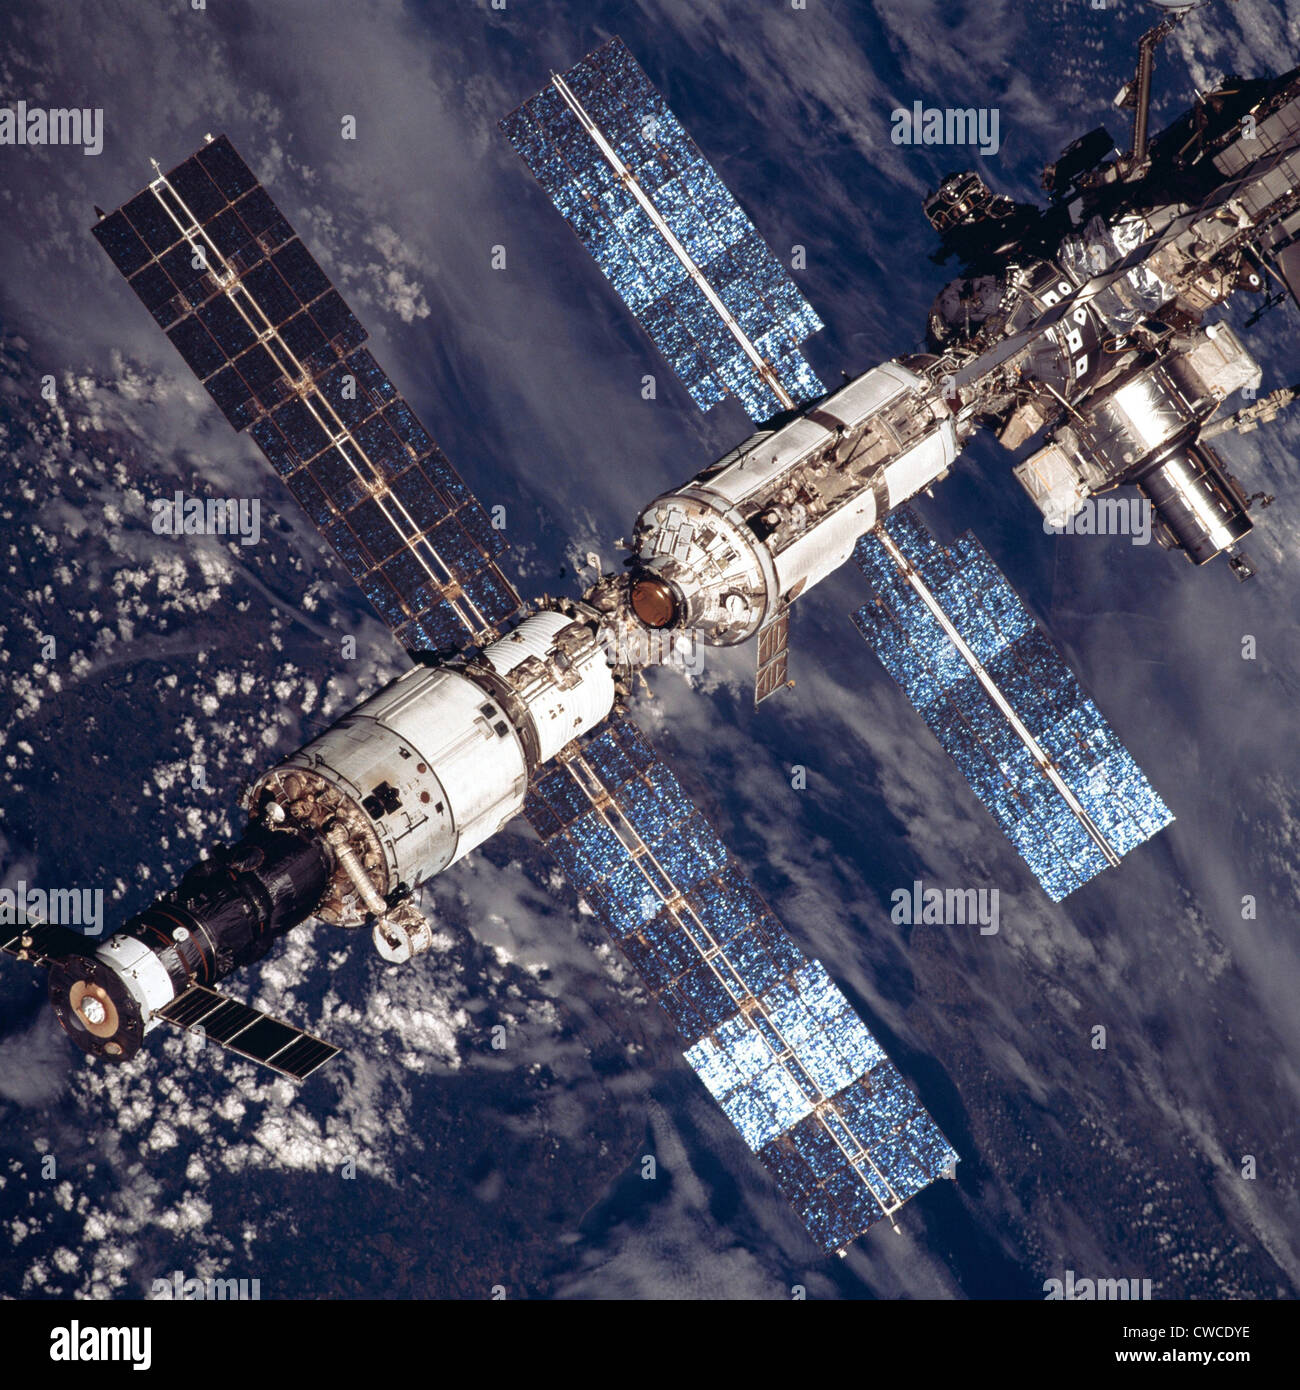 La Stazione Spaziale Internazionale nel 2001. Tettuccio di vista ravvicinata della ampliato la Stazione Spaziale Internazionale. In basso a sinistra a Foto Stock